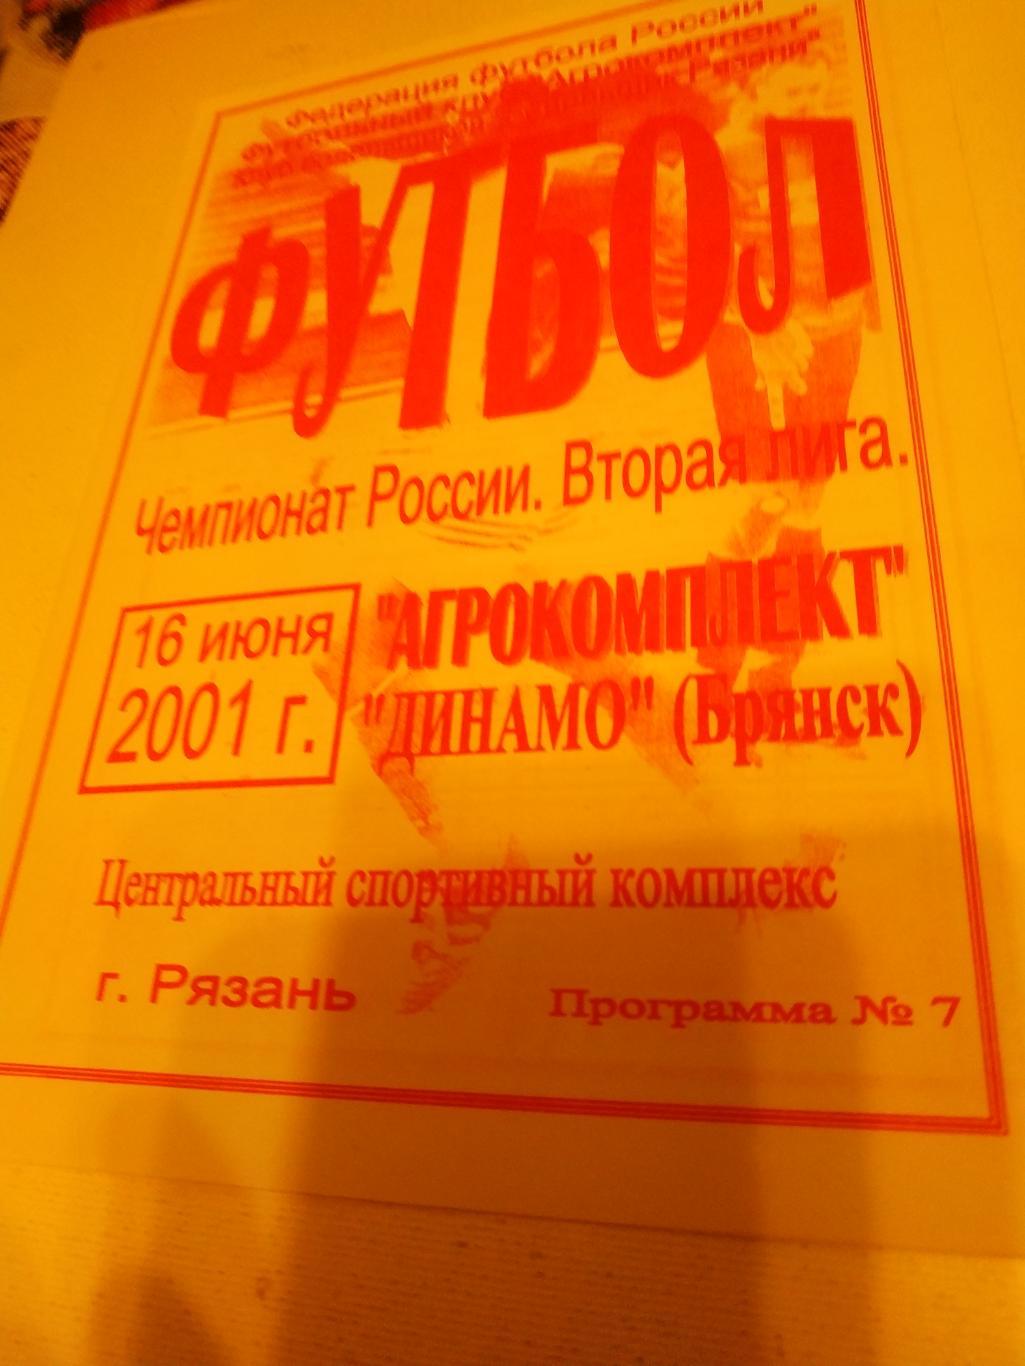 Агрокомплект Рязань - Динамо Брянск. 2001